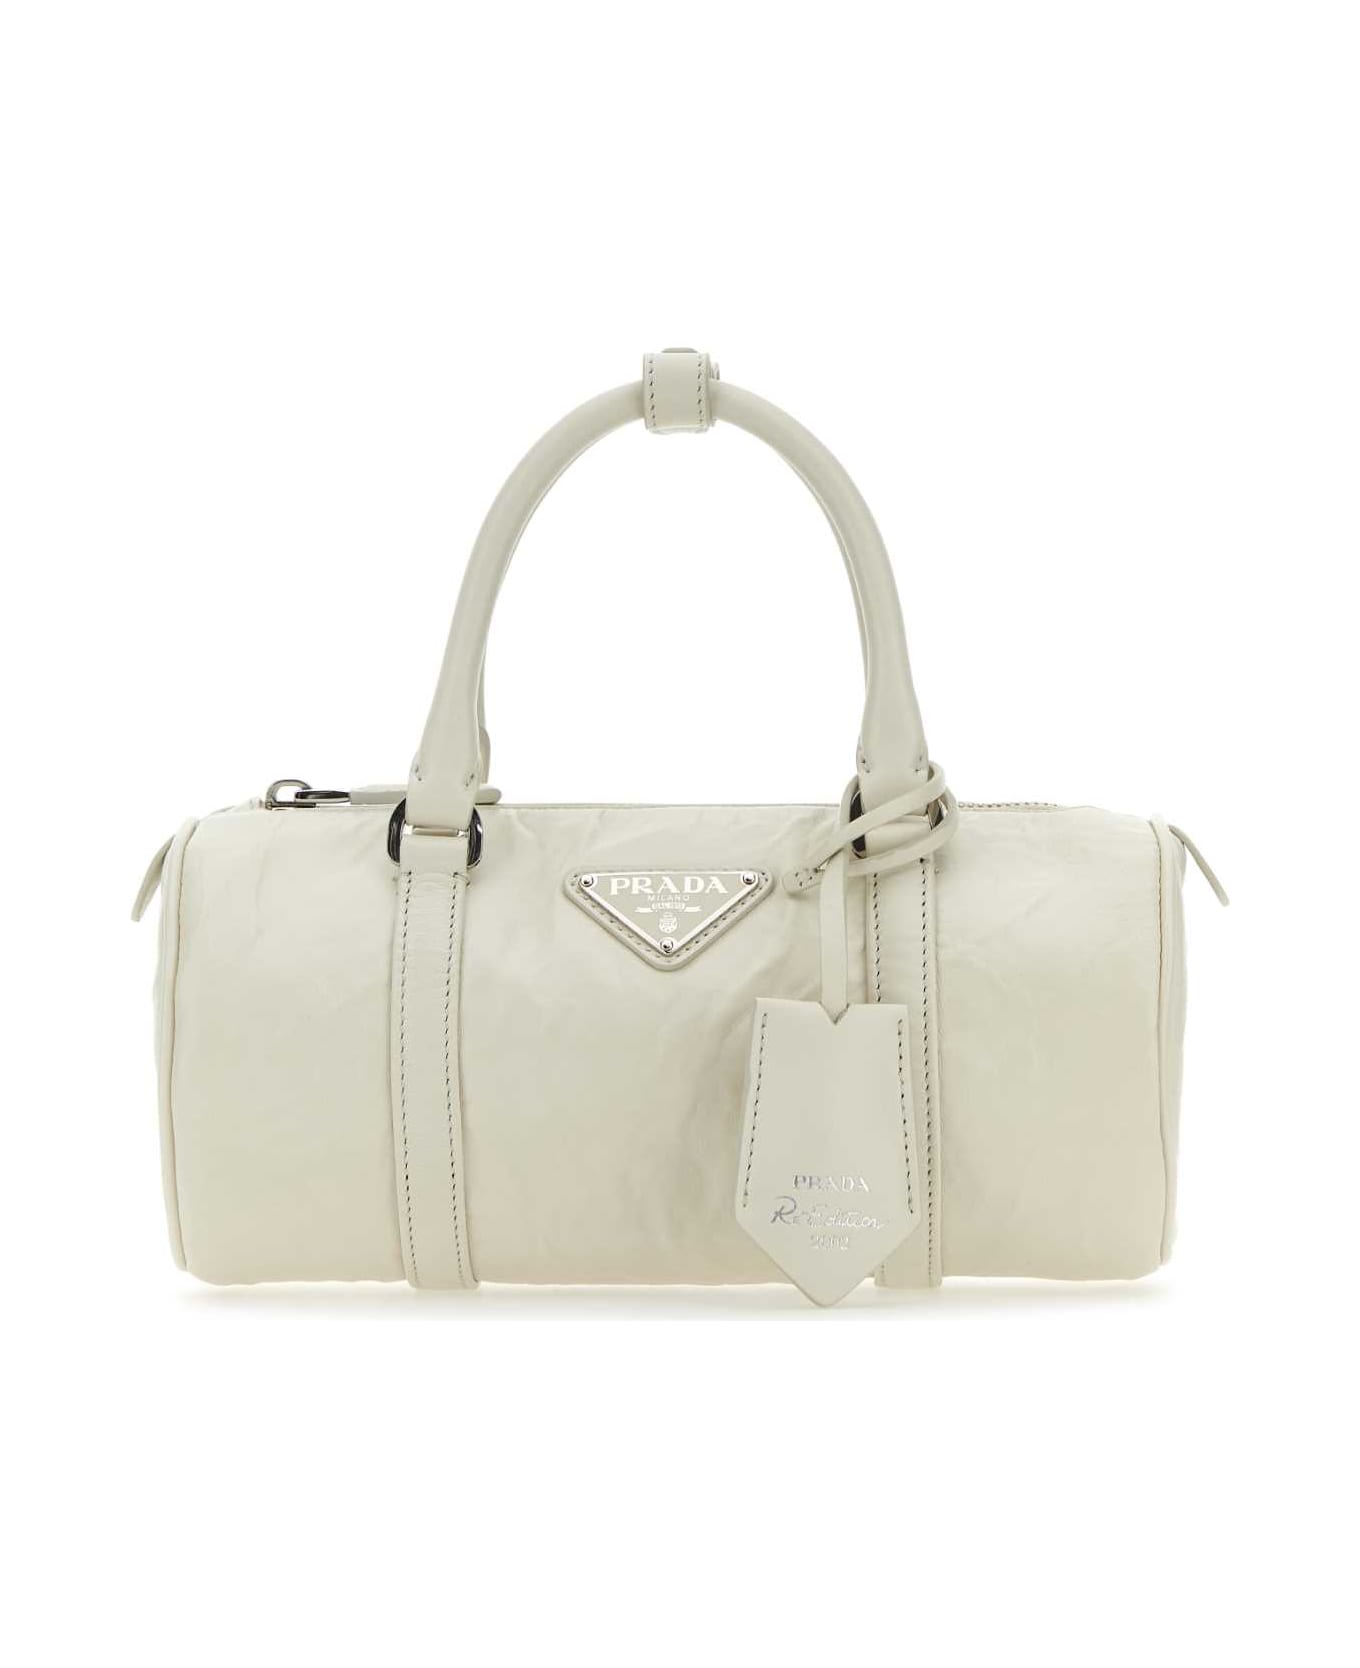 Prada White Leather Small Handbag - White